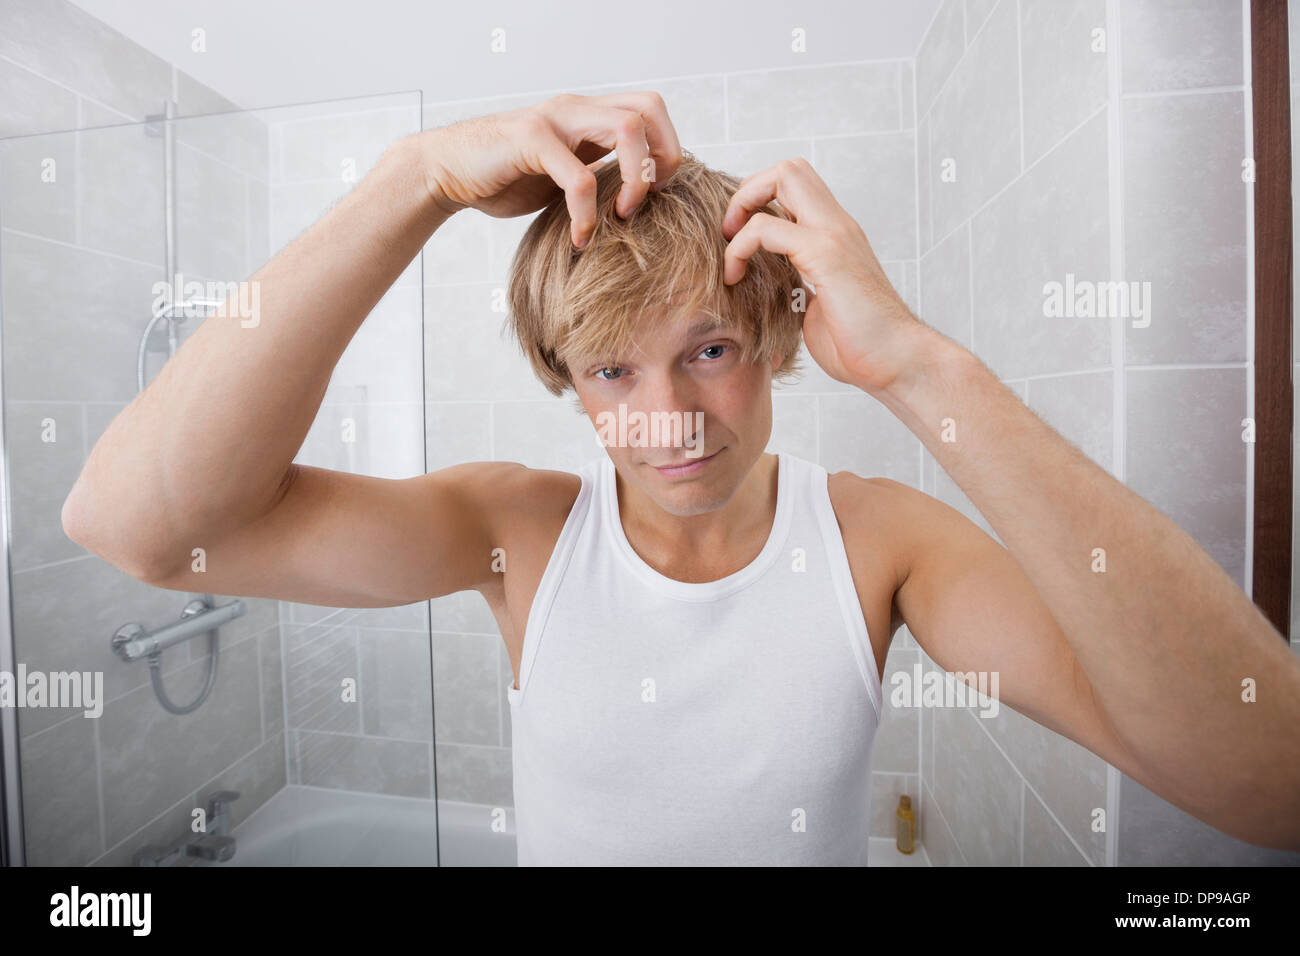 Porträt des Mannes weiße Haare im Bad gesucht Stockfoto